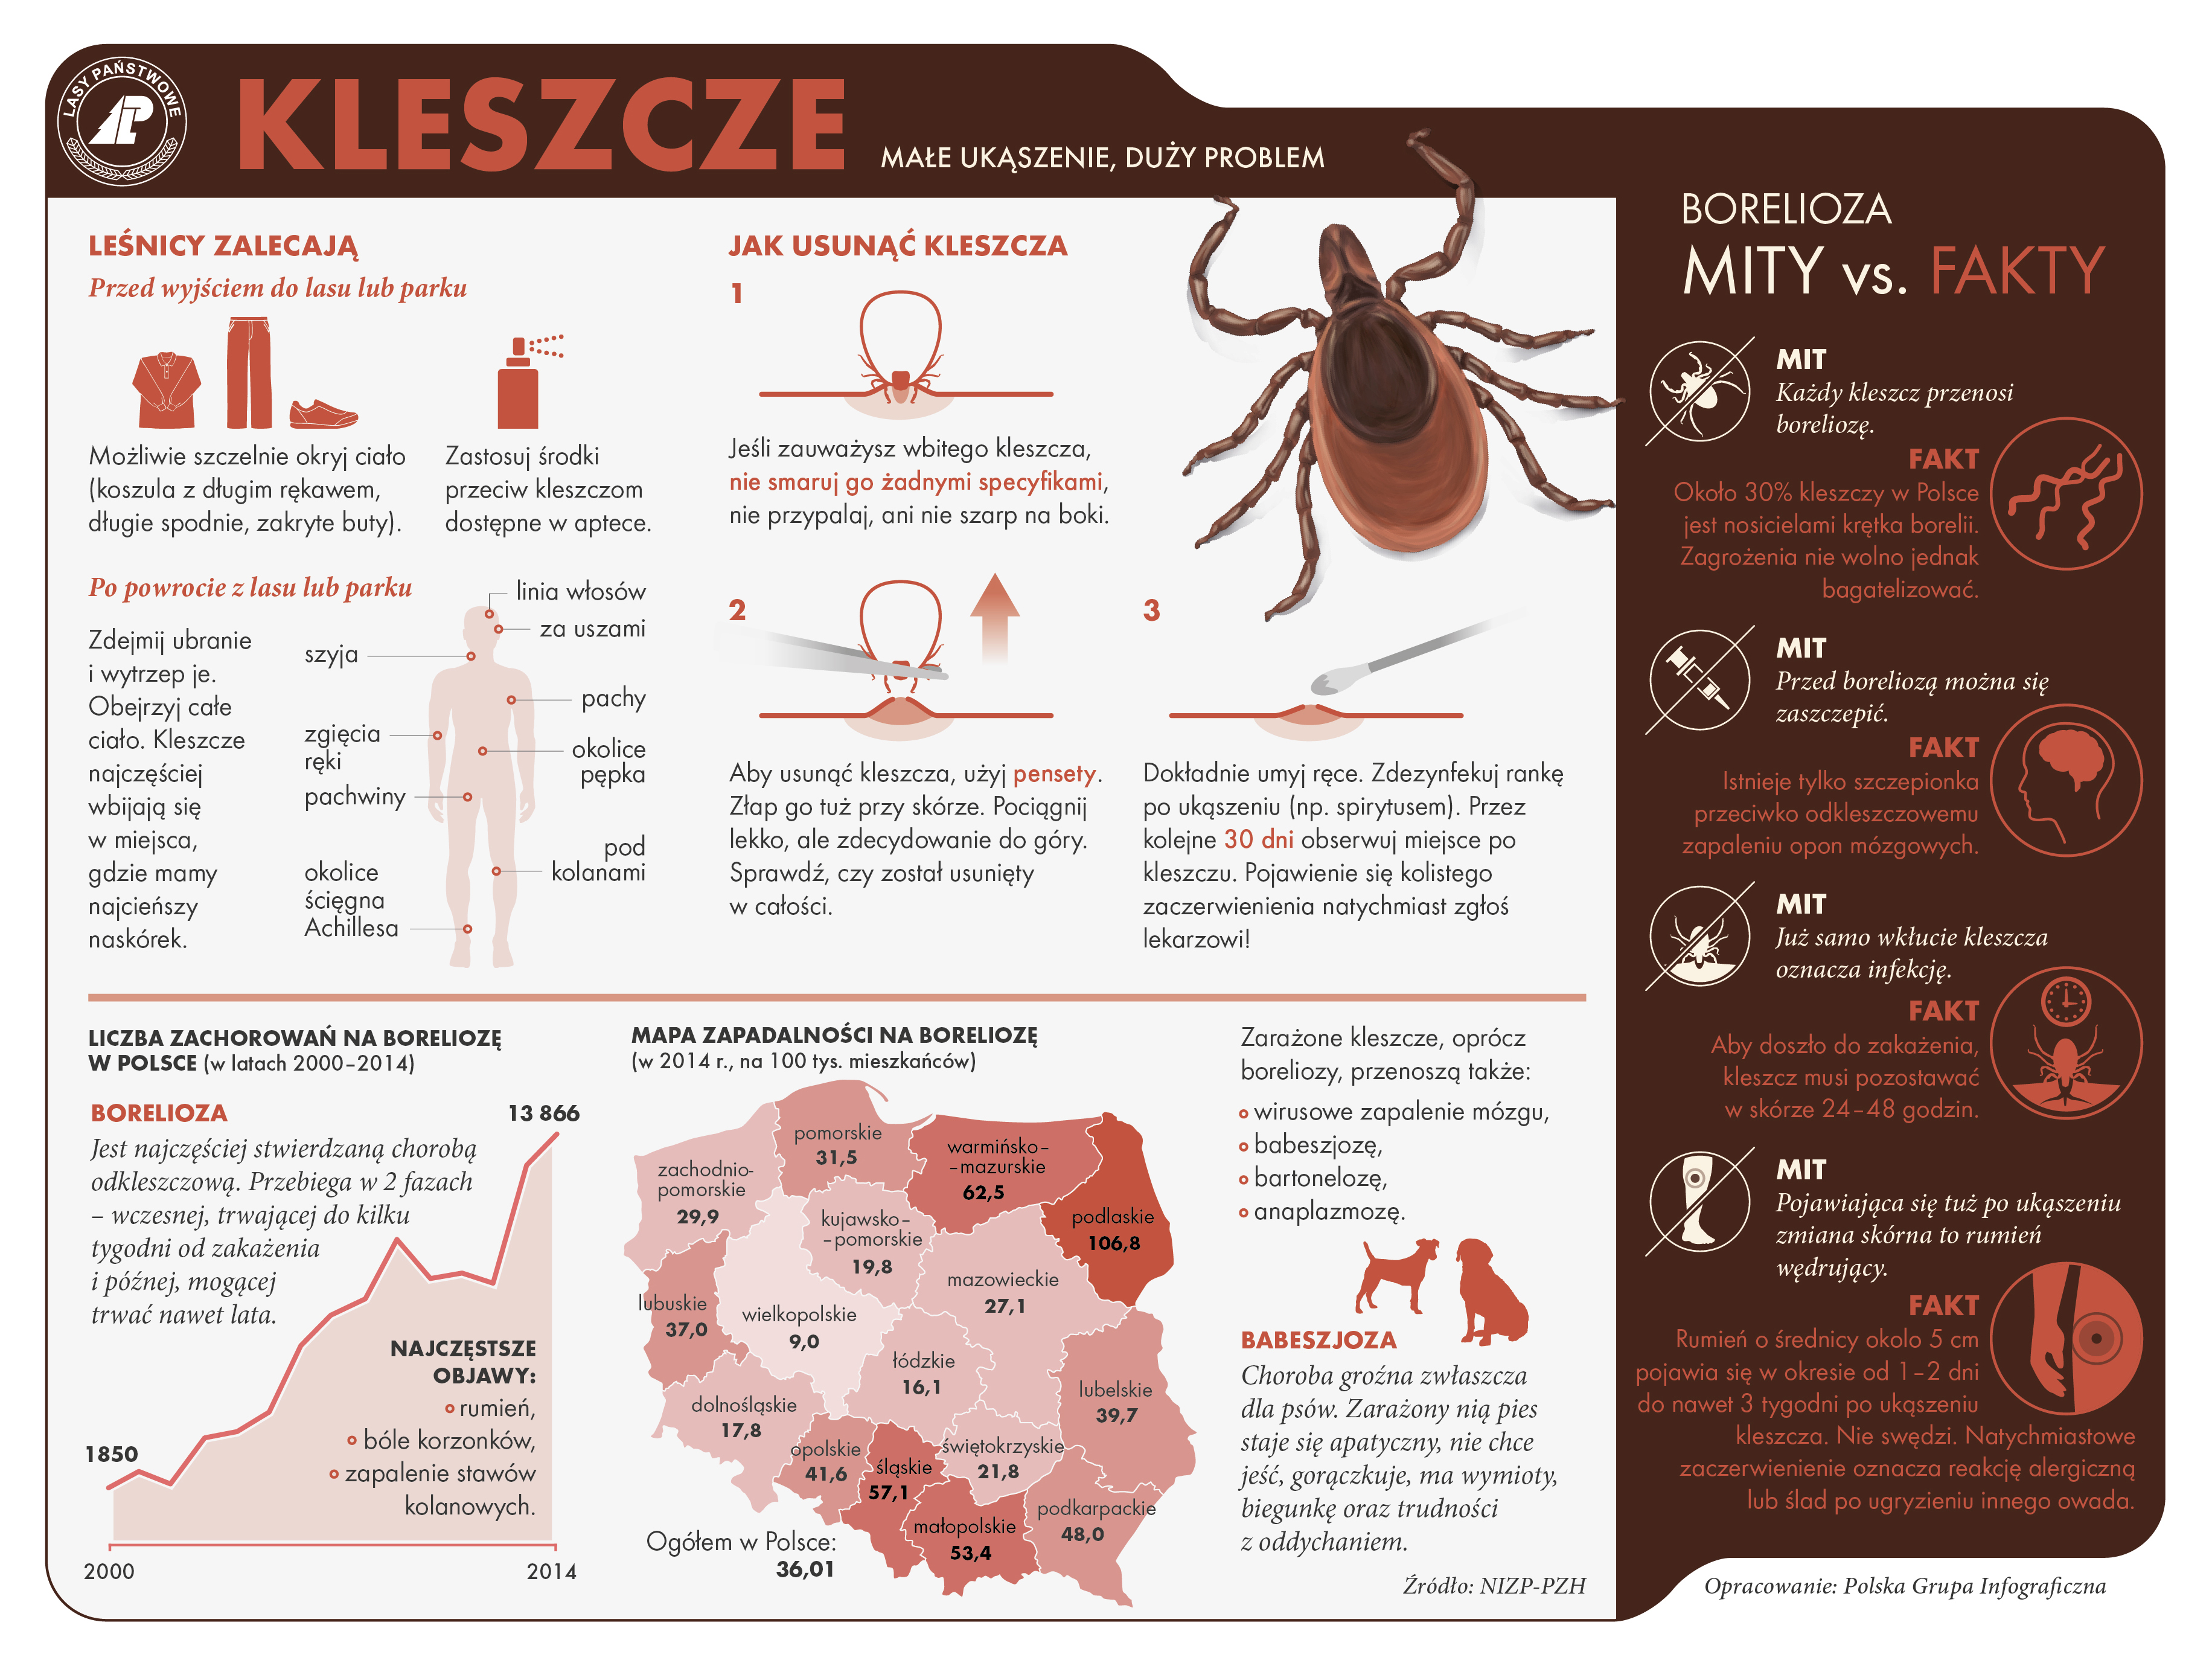 Infografika dotycząca kleszczy przygotowana przez CILP - opracowanie Polska Grupa Graficzna. 